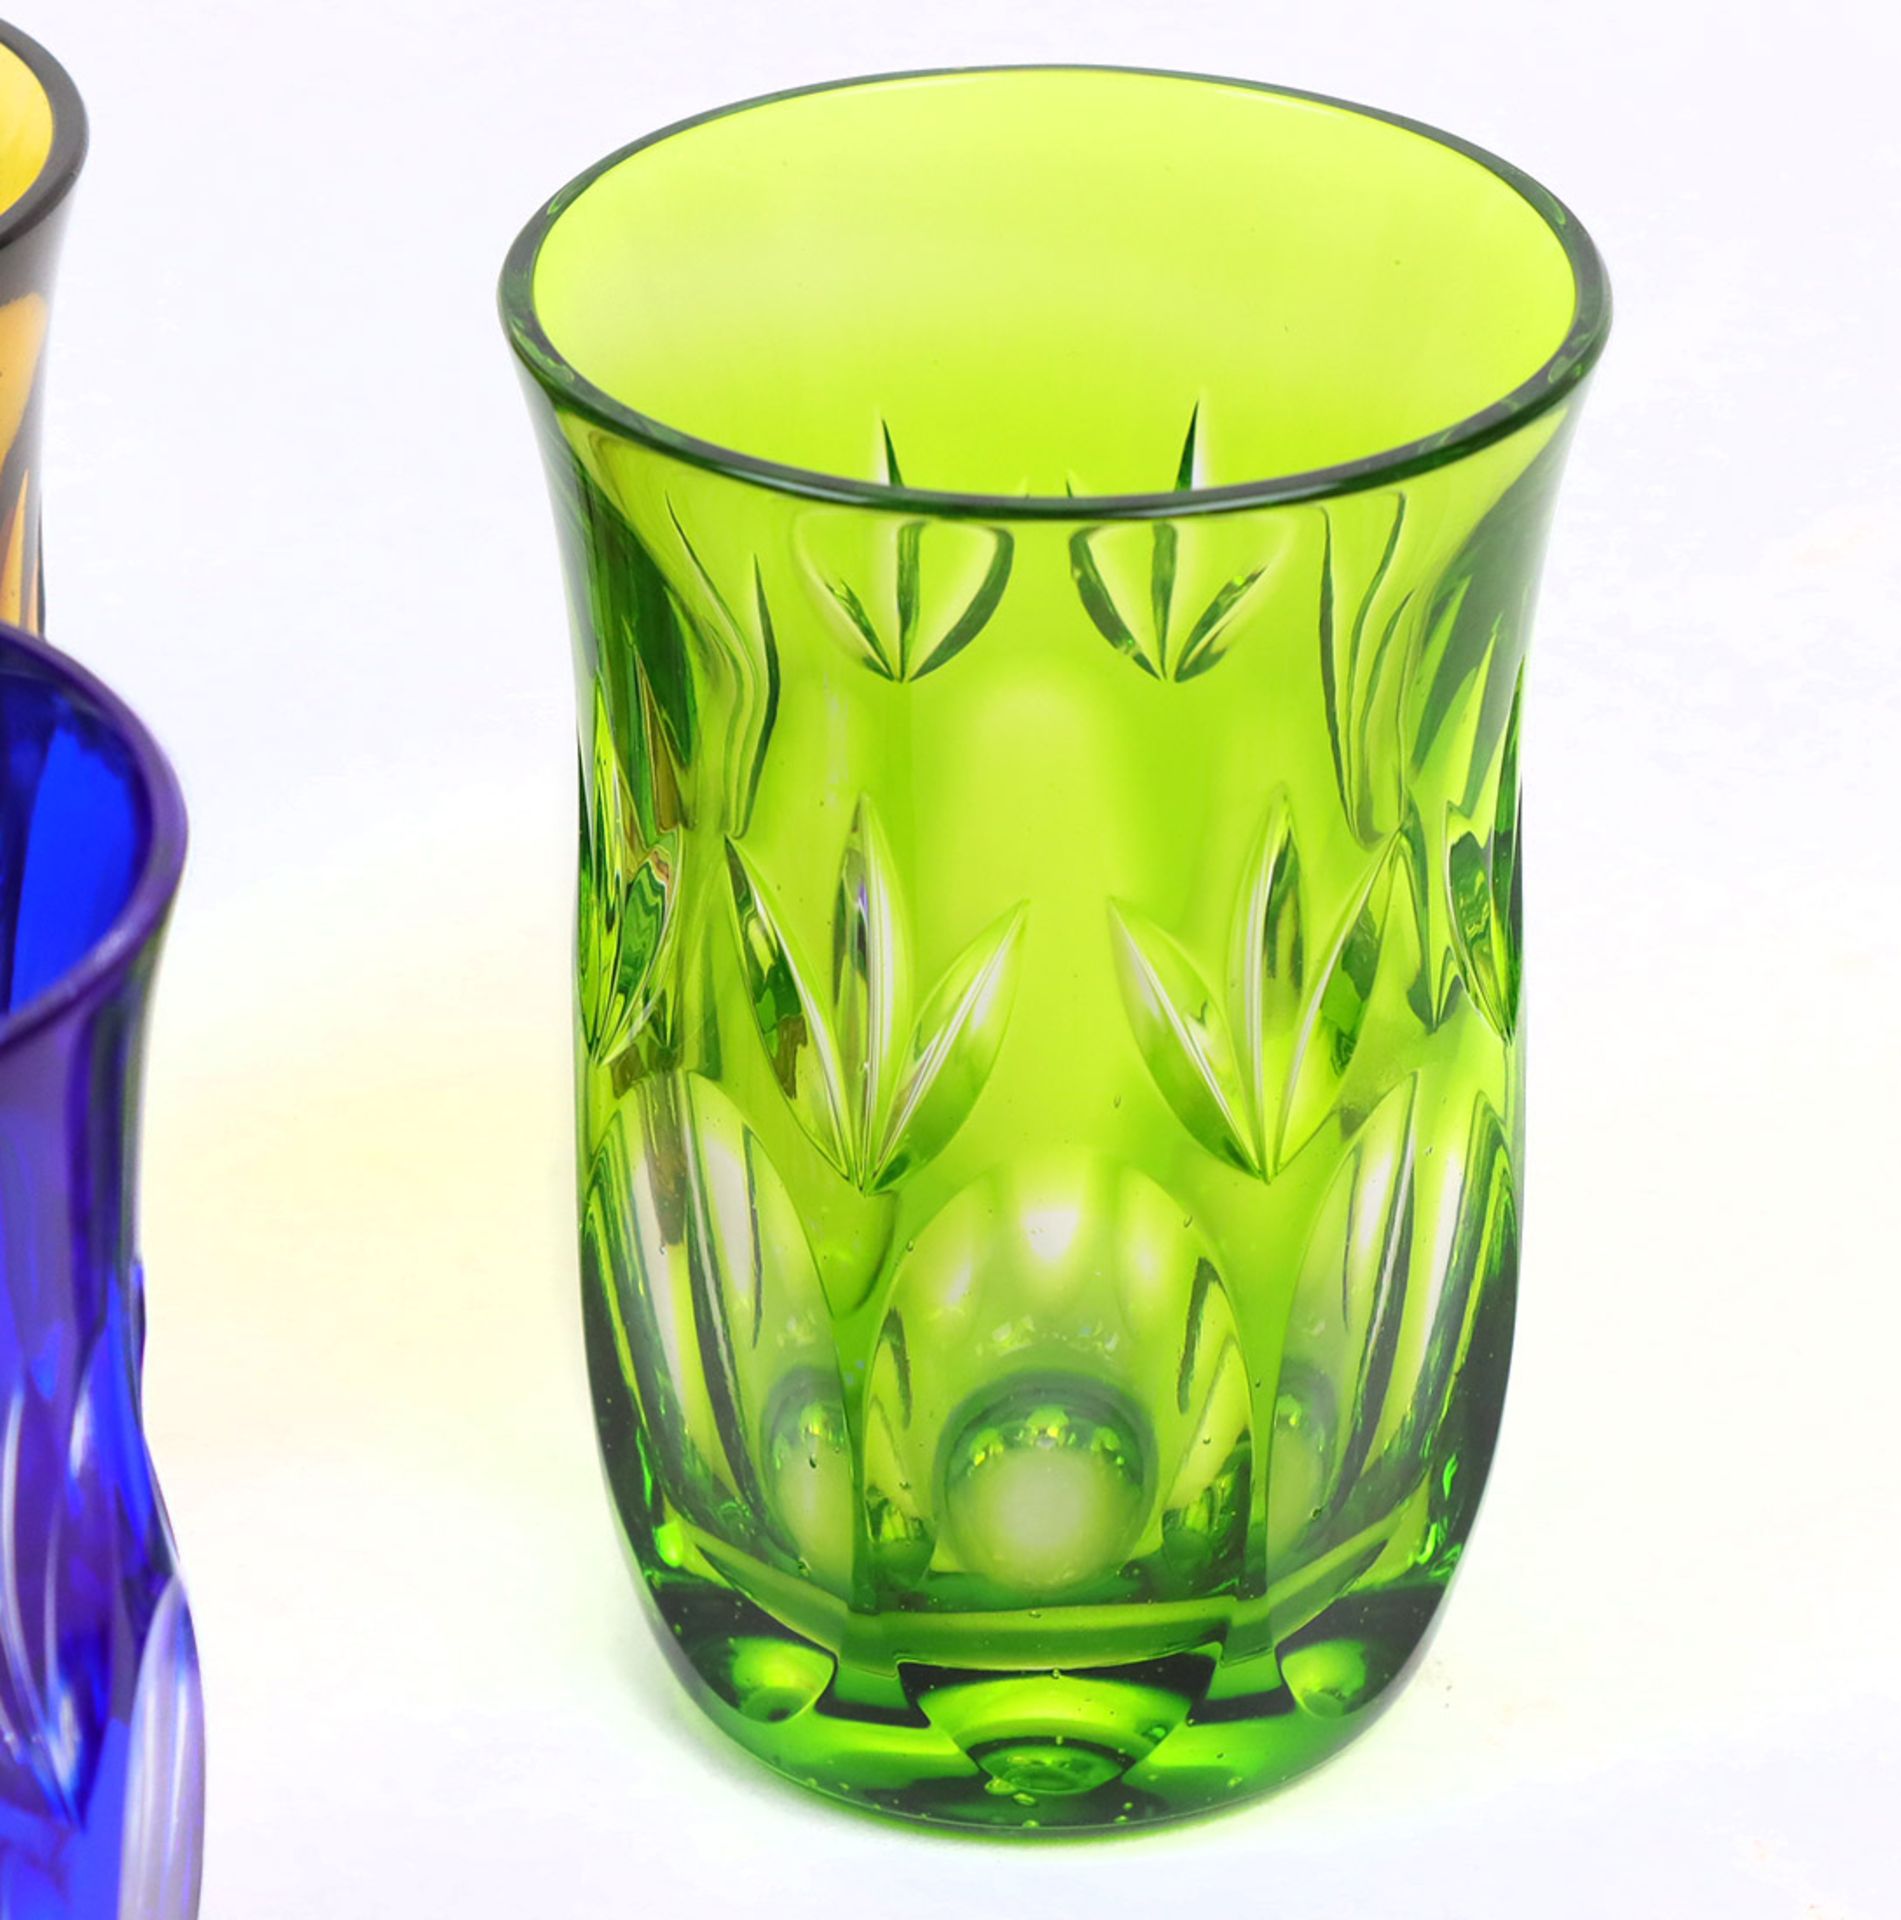 Satz Kristallbecherfarbloses Kristallglas mundgeblasen, bernsteinfarbig, blau u. grün - Bild 2 aus 2